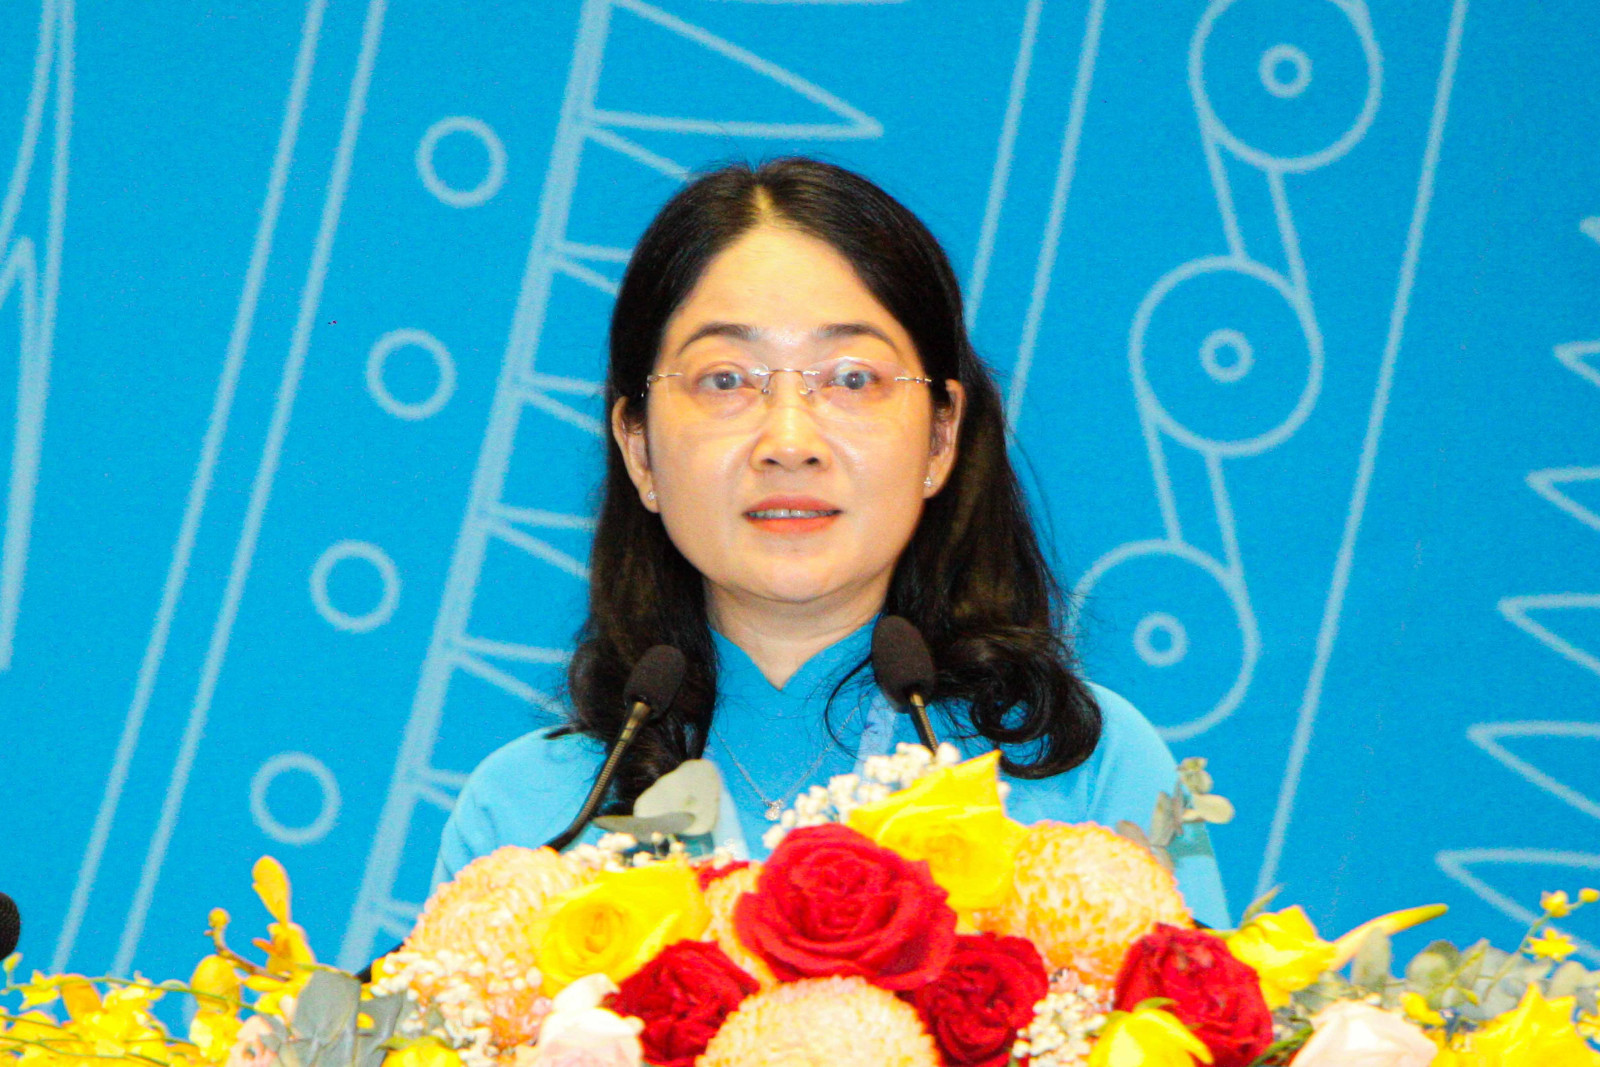 Đồng chí Nguyễn Kim Loan phát biểu bế mạc đại hội (Ảnh: Quốc Chiến).